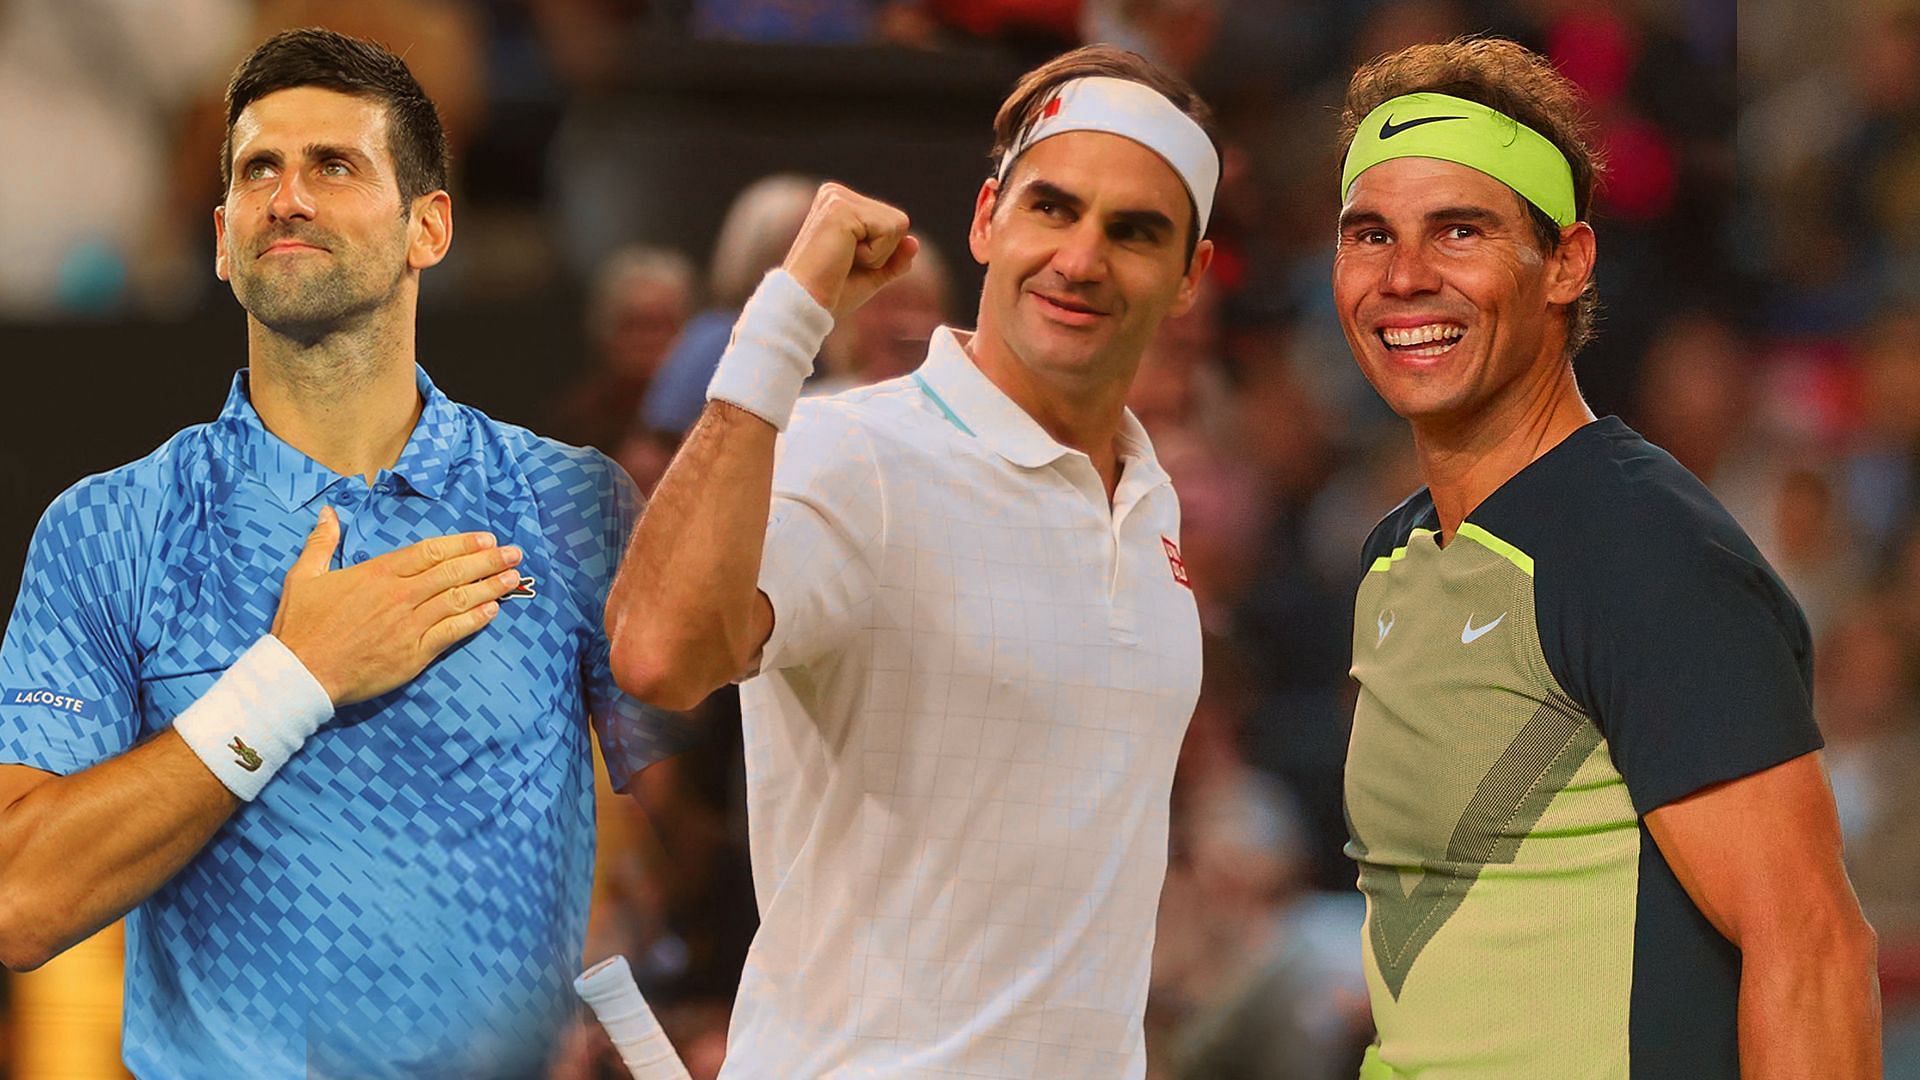 The Big 3 - Novak Djokovic(left), Roger Federer(center) and Rafael Nadal(right)